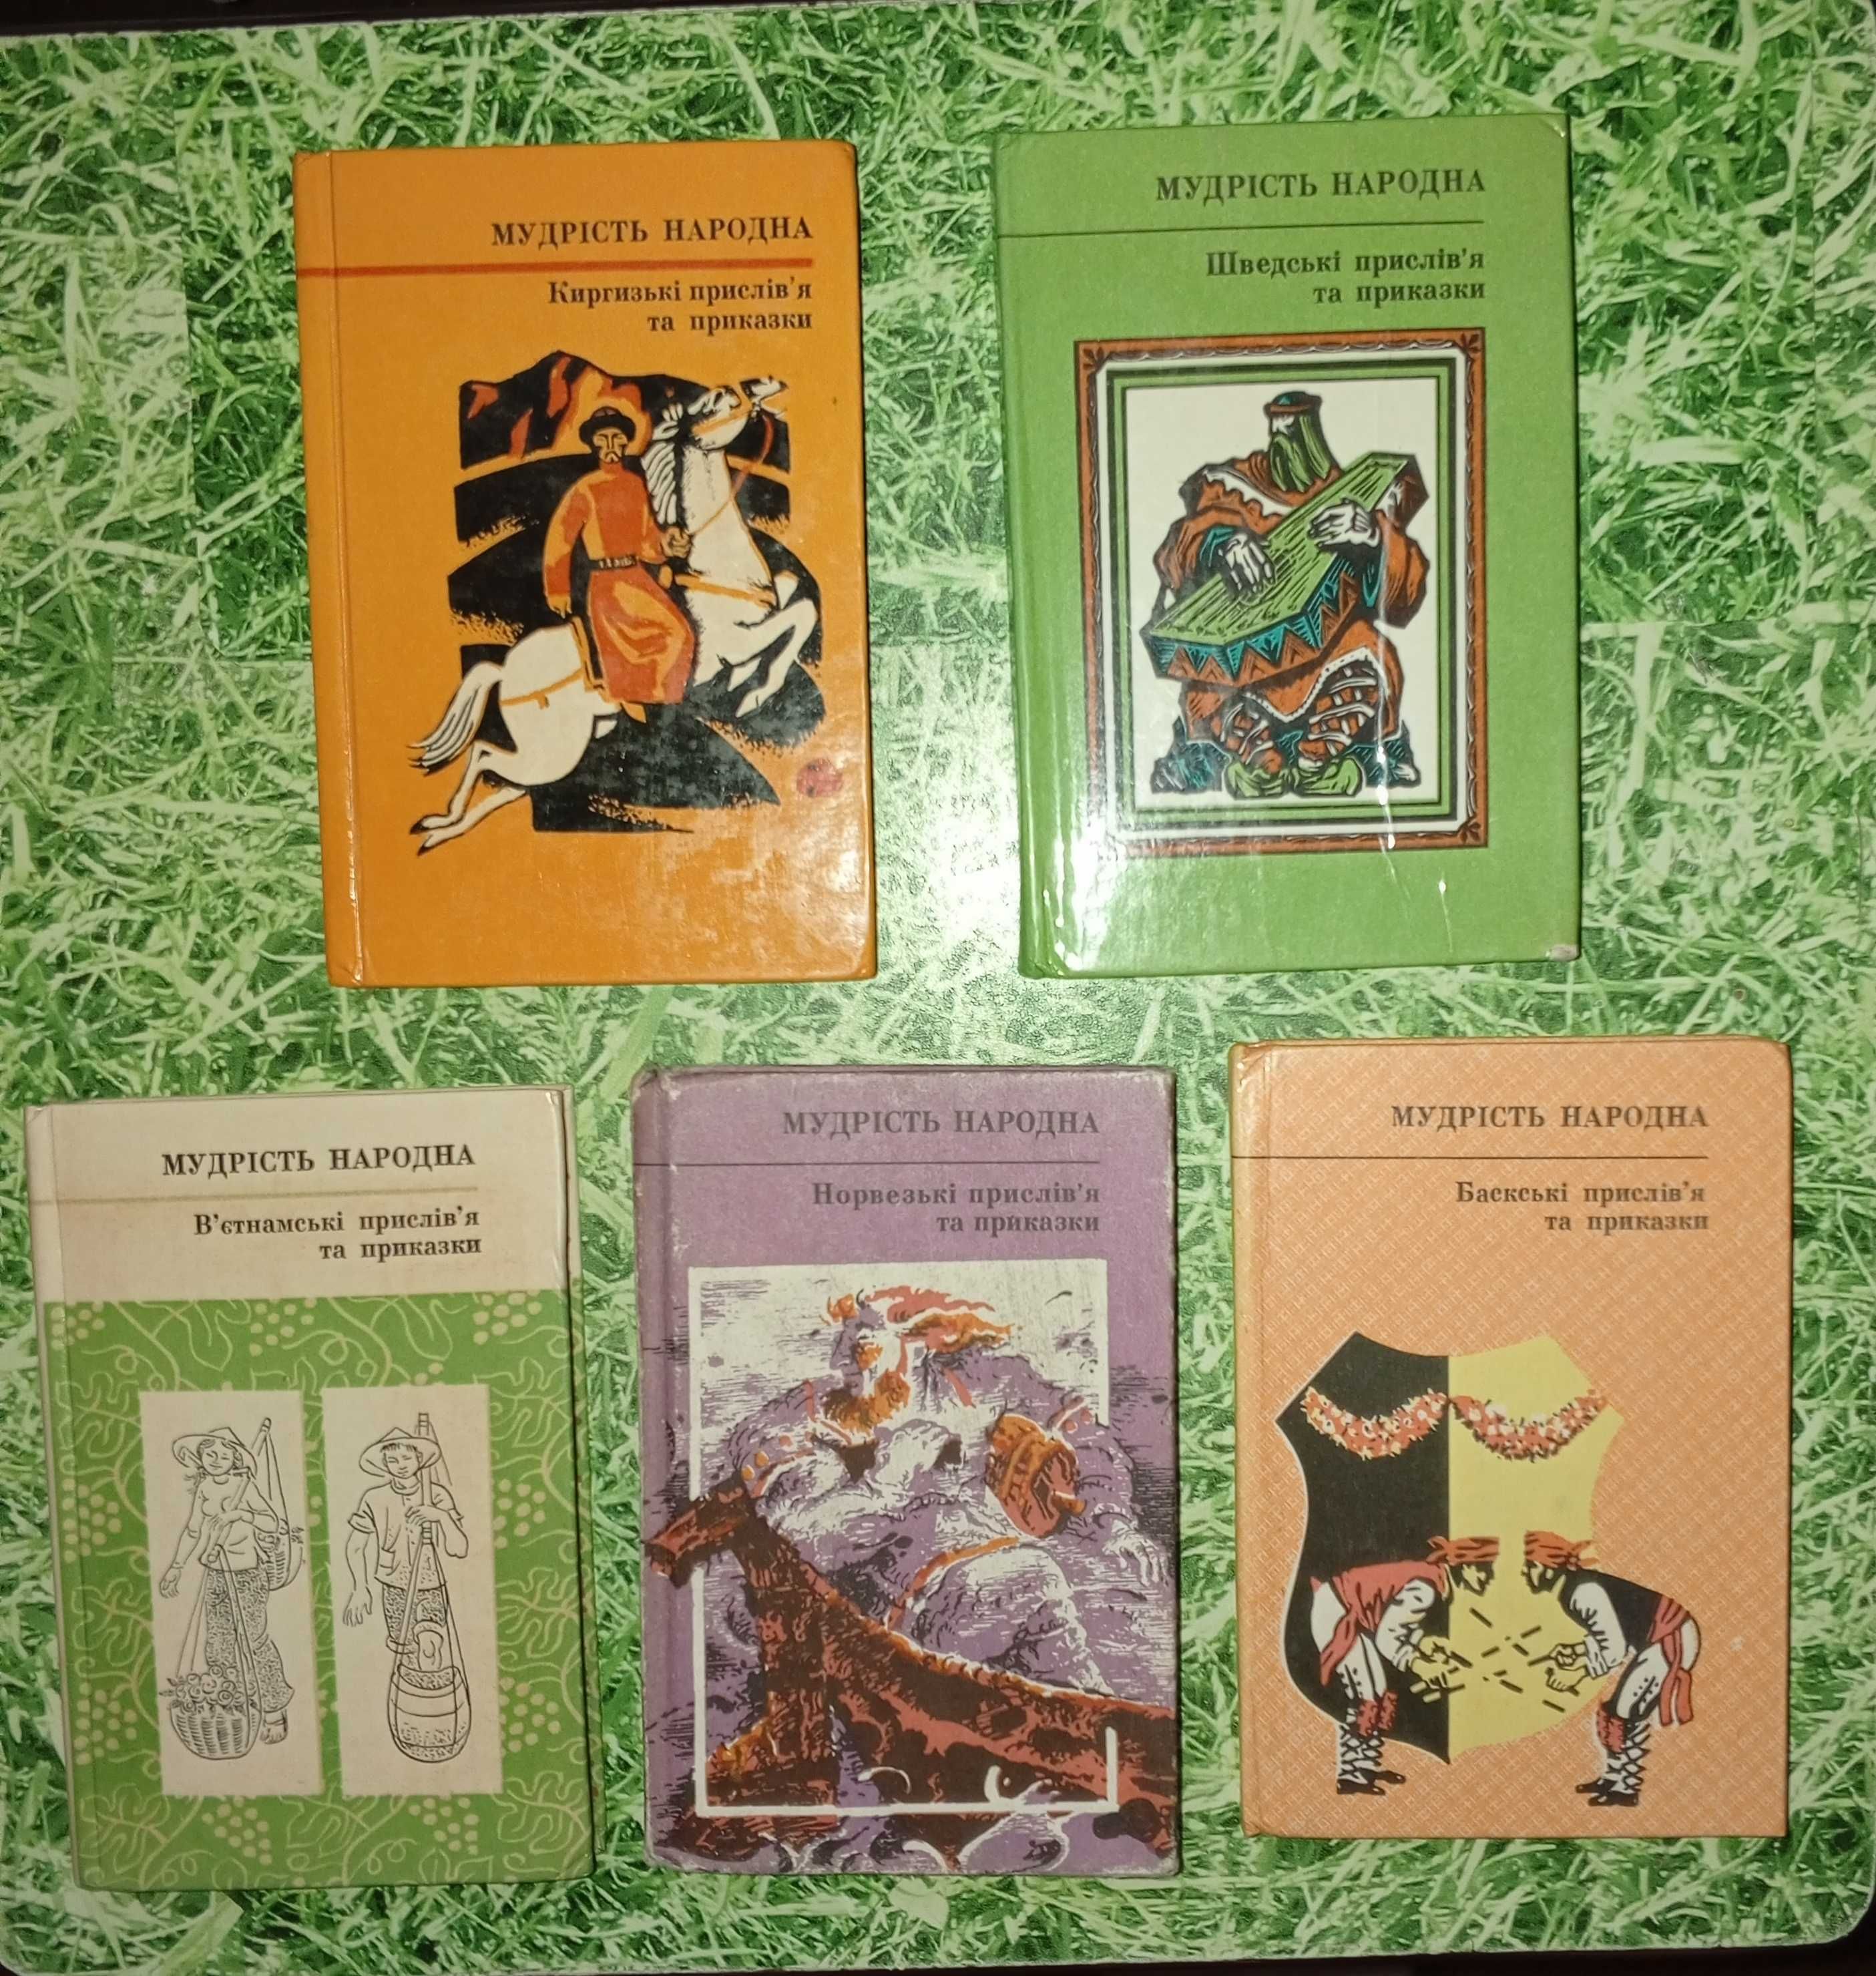 Книжки серії "Мудрість народна" (випуски 21, 22, 48, 50, 52)